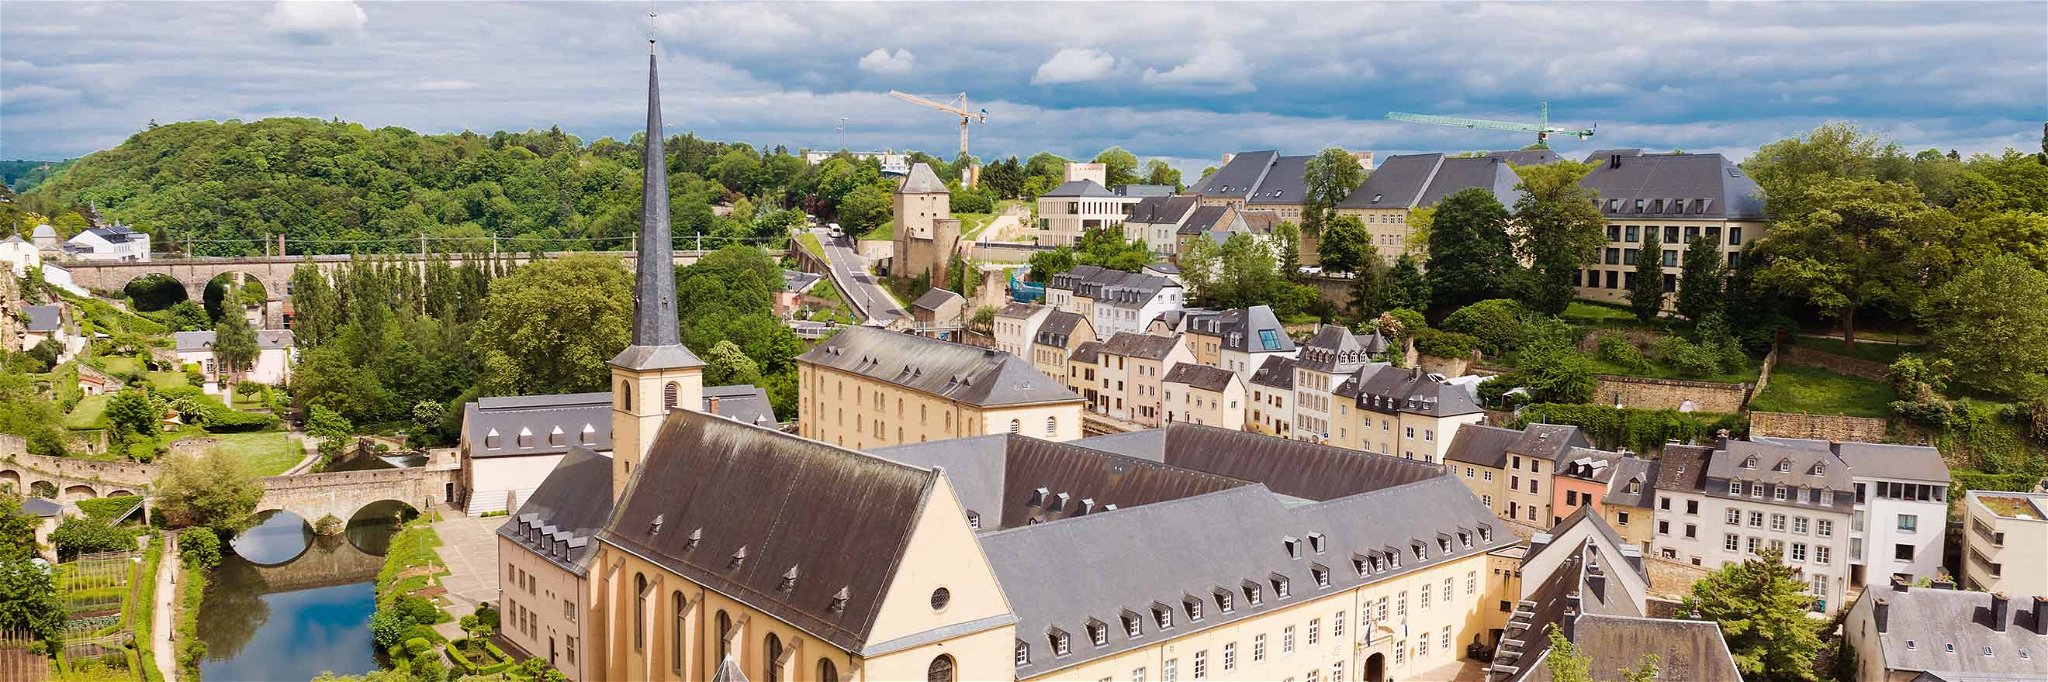 Blick auf die Stadt Luxemburg mit der Abtei Neumünster und dem Fluss Alzette.